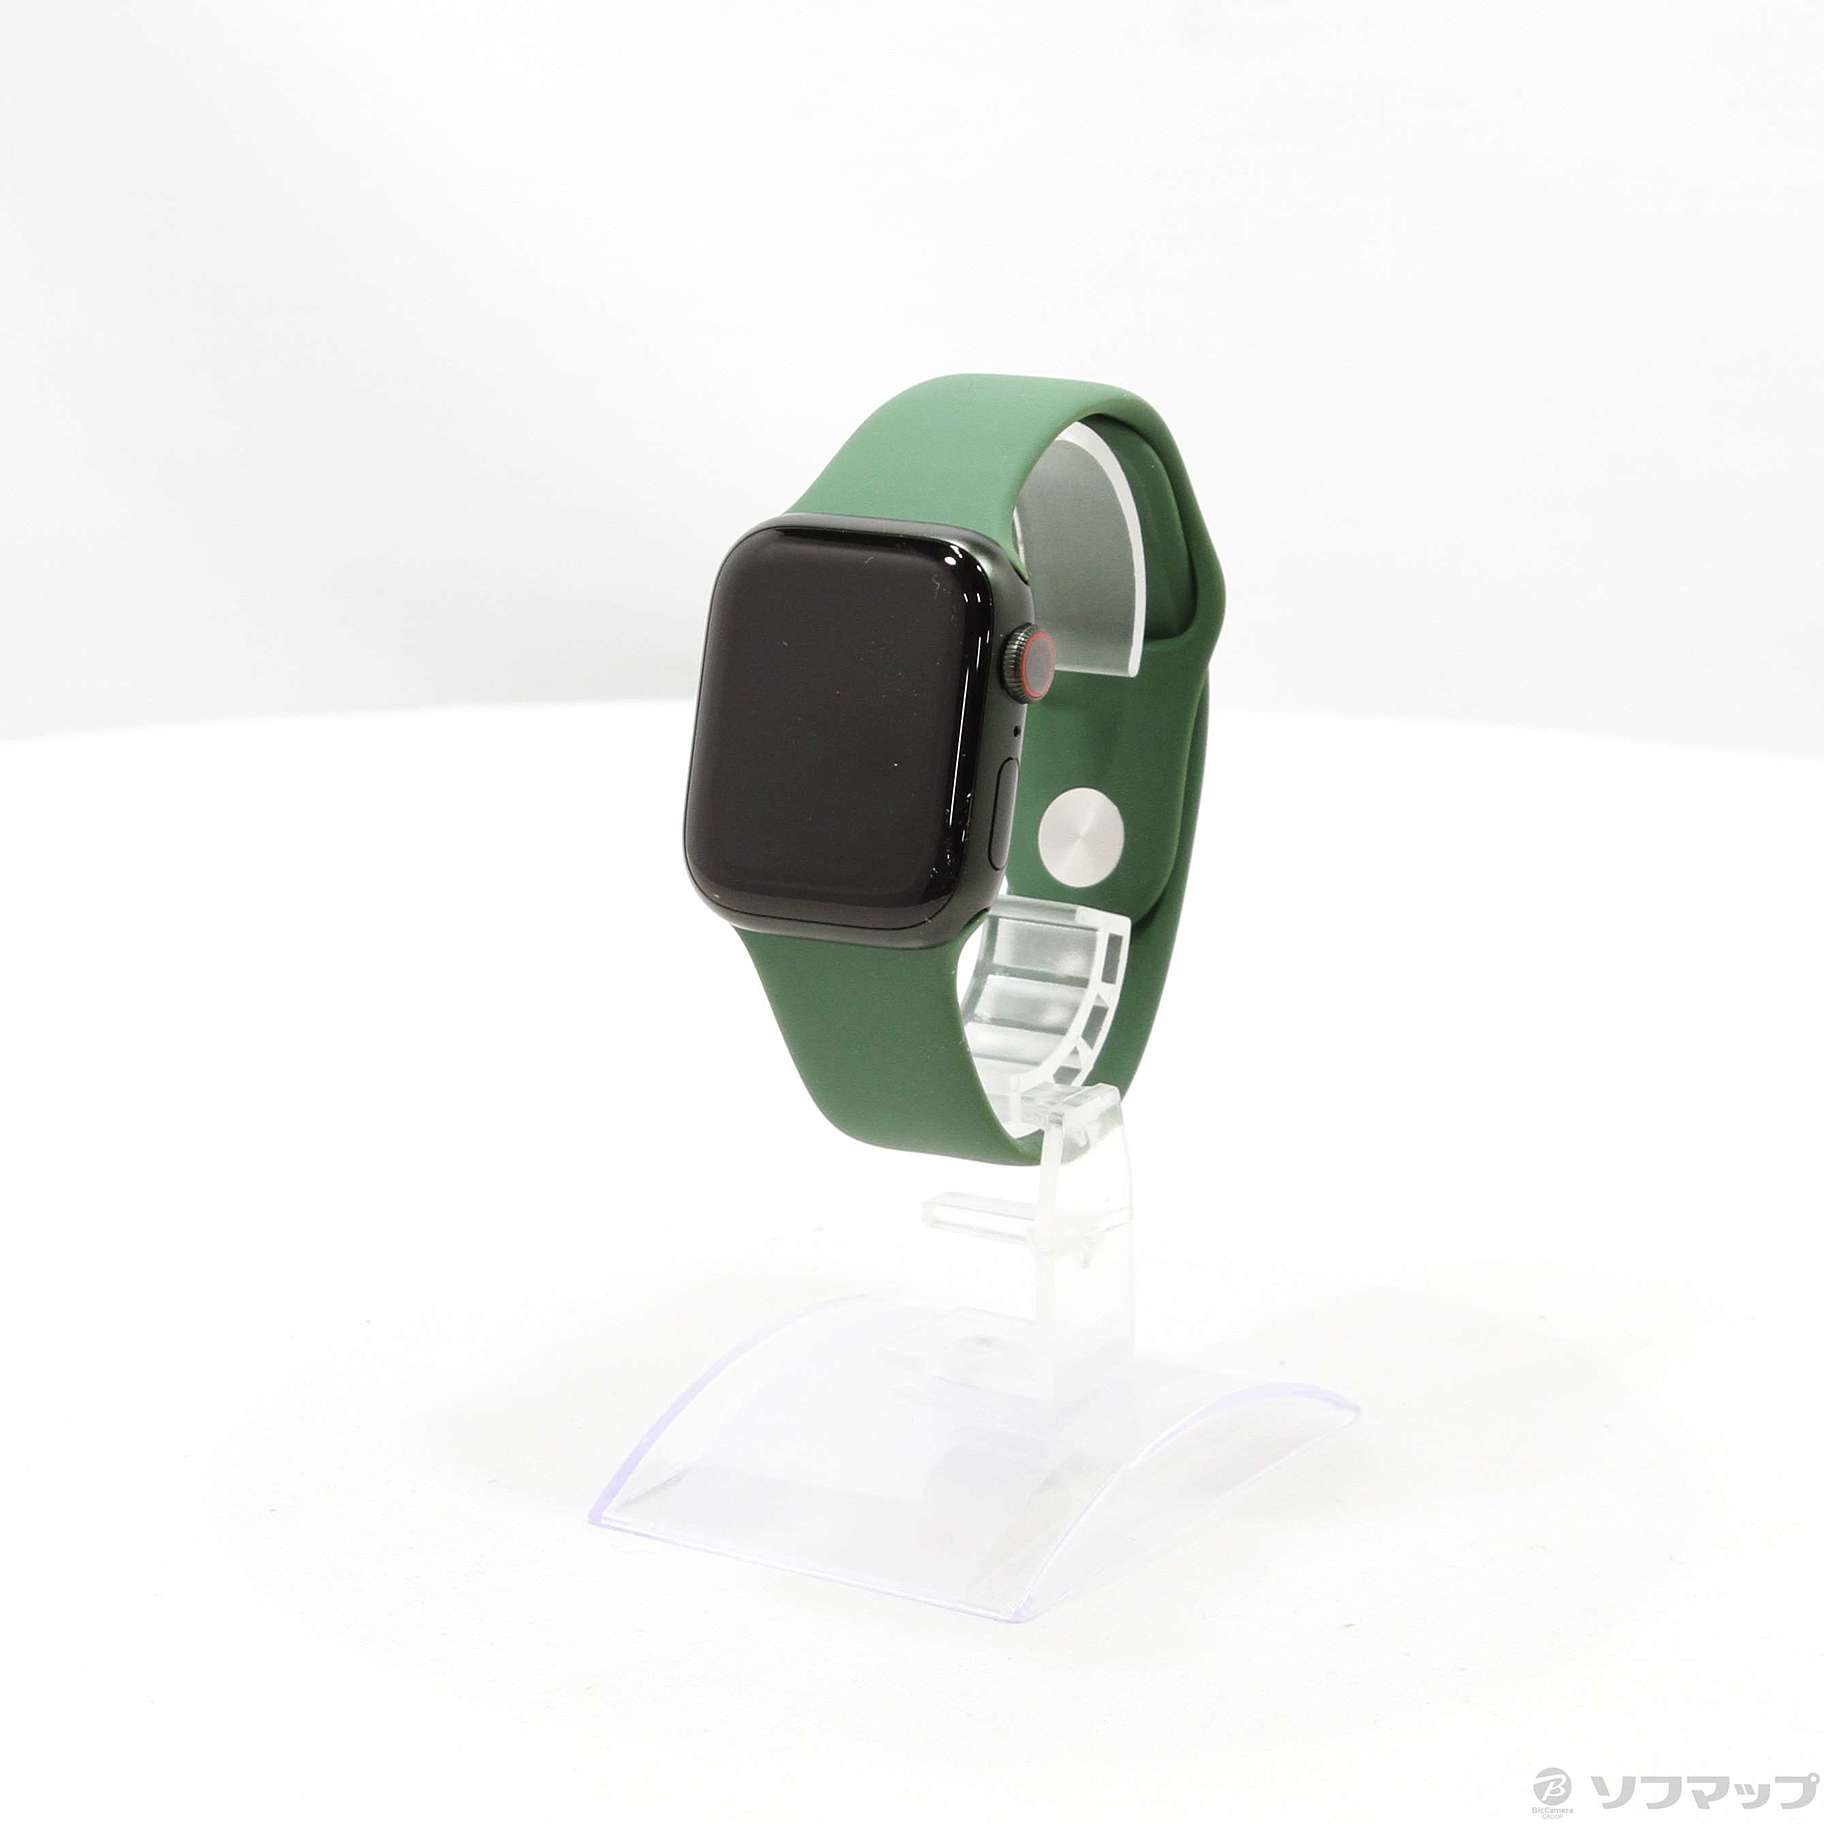 〔展示品〕 Apple Watch Series 7 GPS + Cellular 41mm グリーンアルミニウムケース クローバースポーツバンド